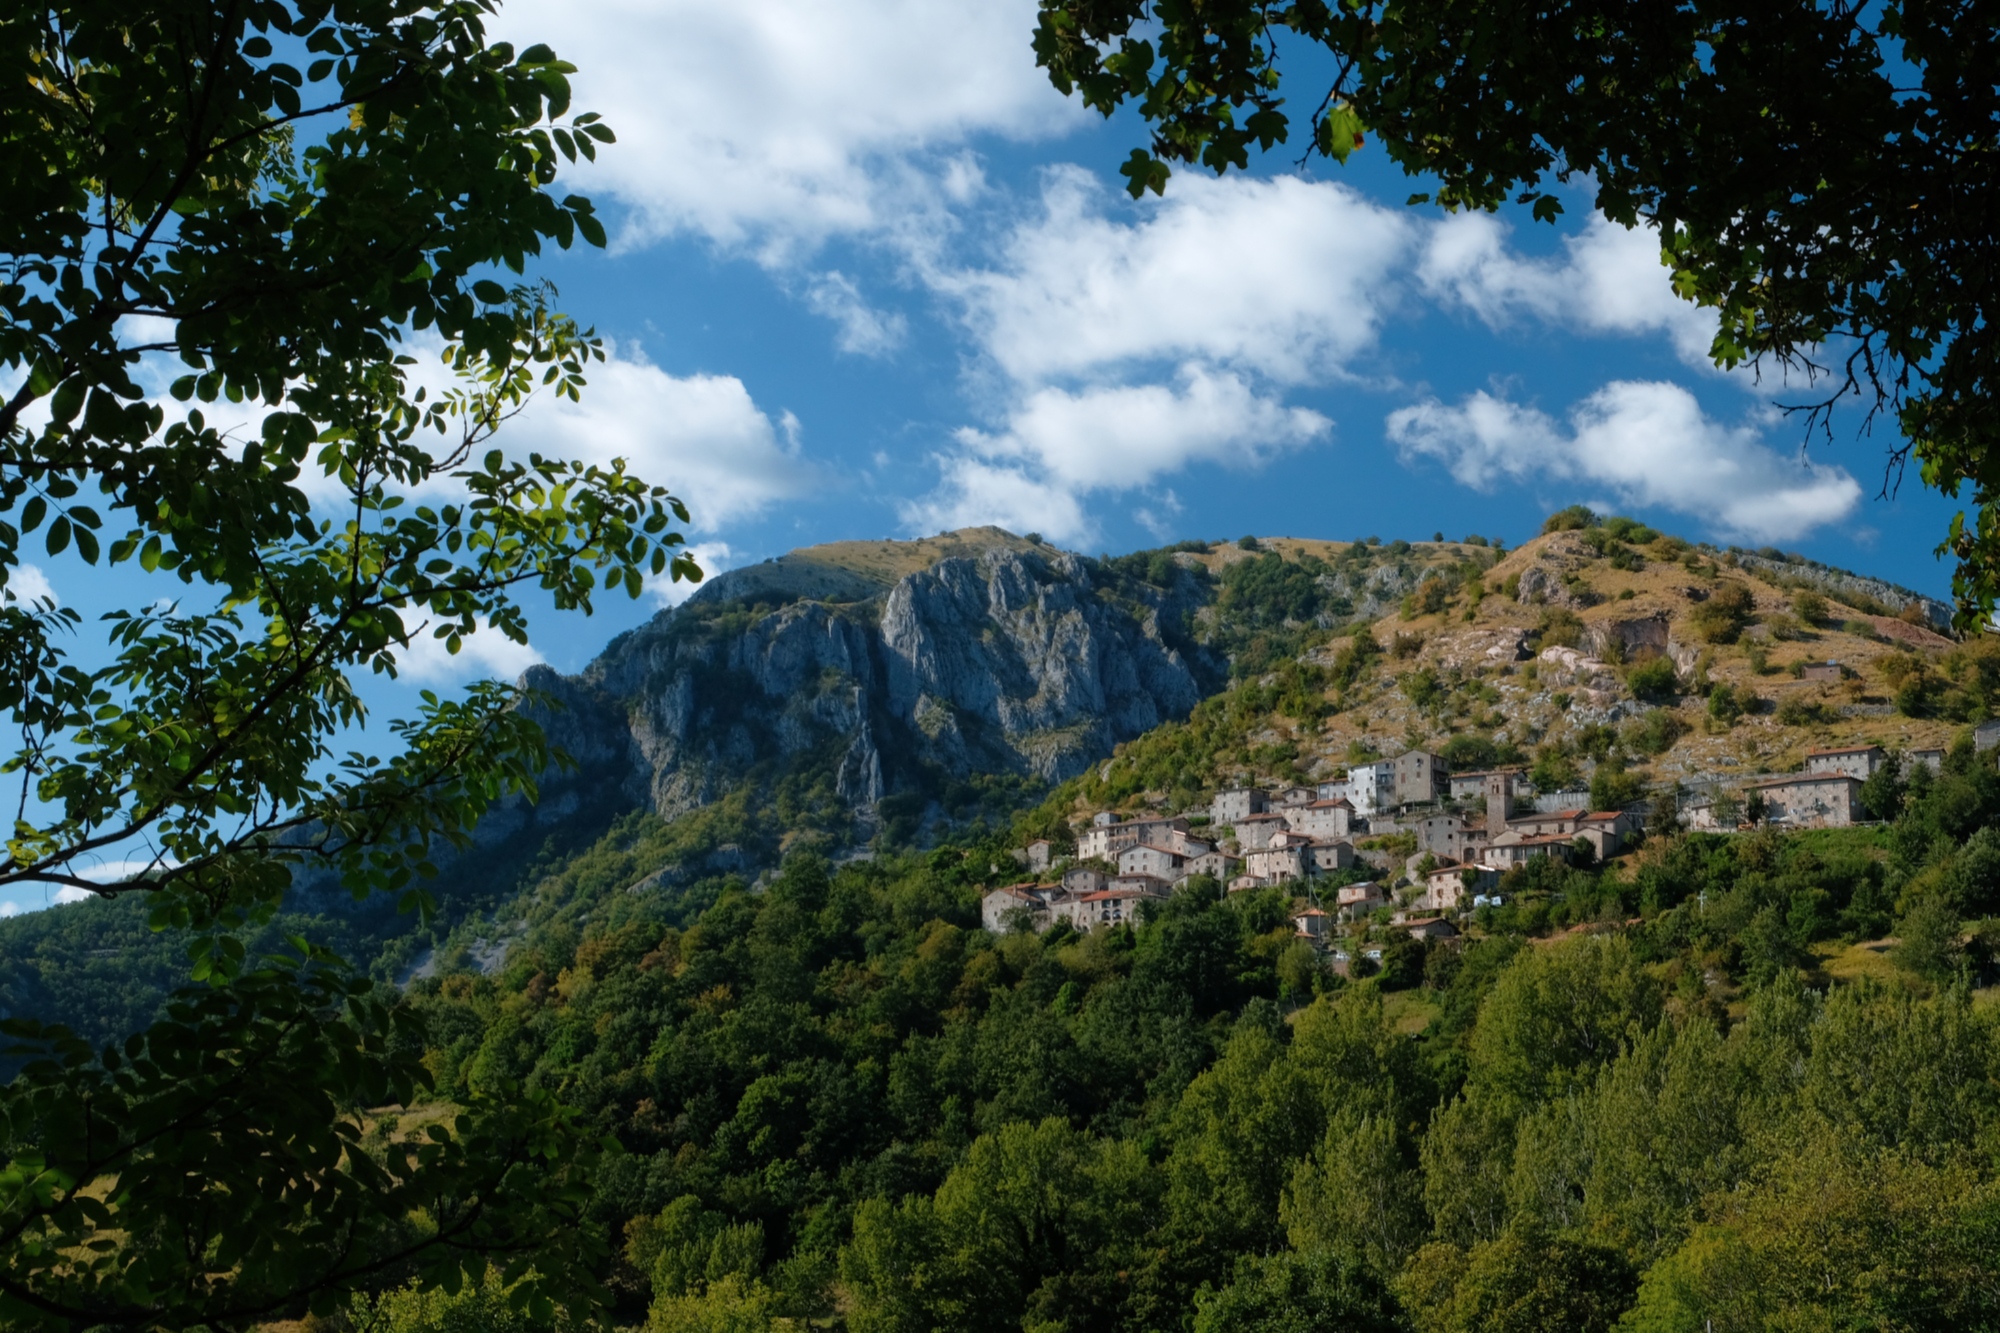 La Pania di Corfino and the town of Sassorosso